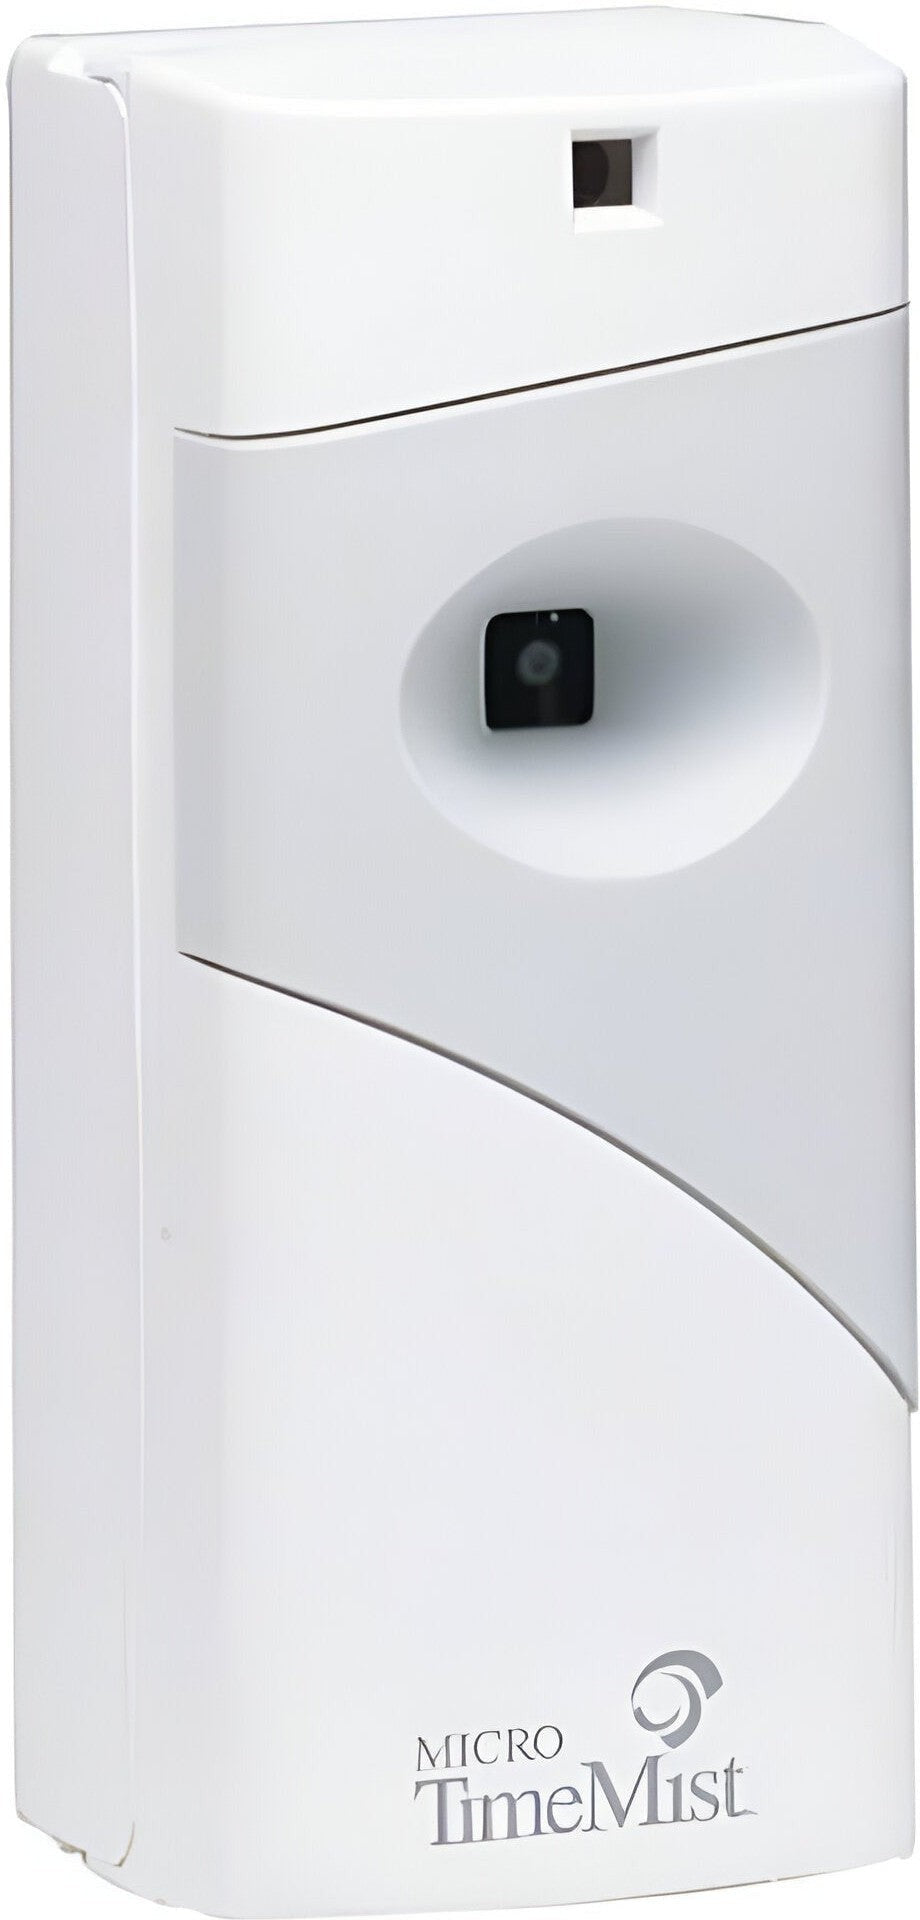 TimeMist - White/Grey Micro Metered Air Freshener Dispenser, 6/Cs - B66706